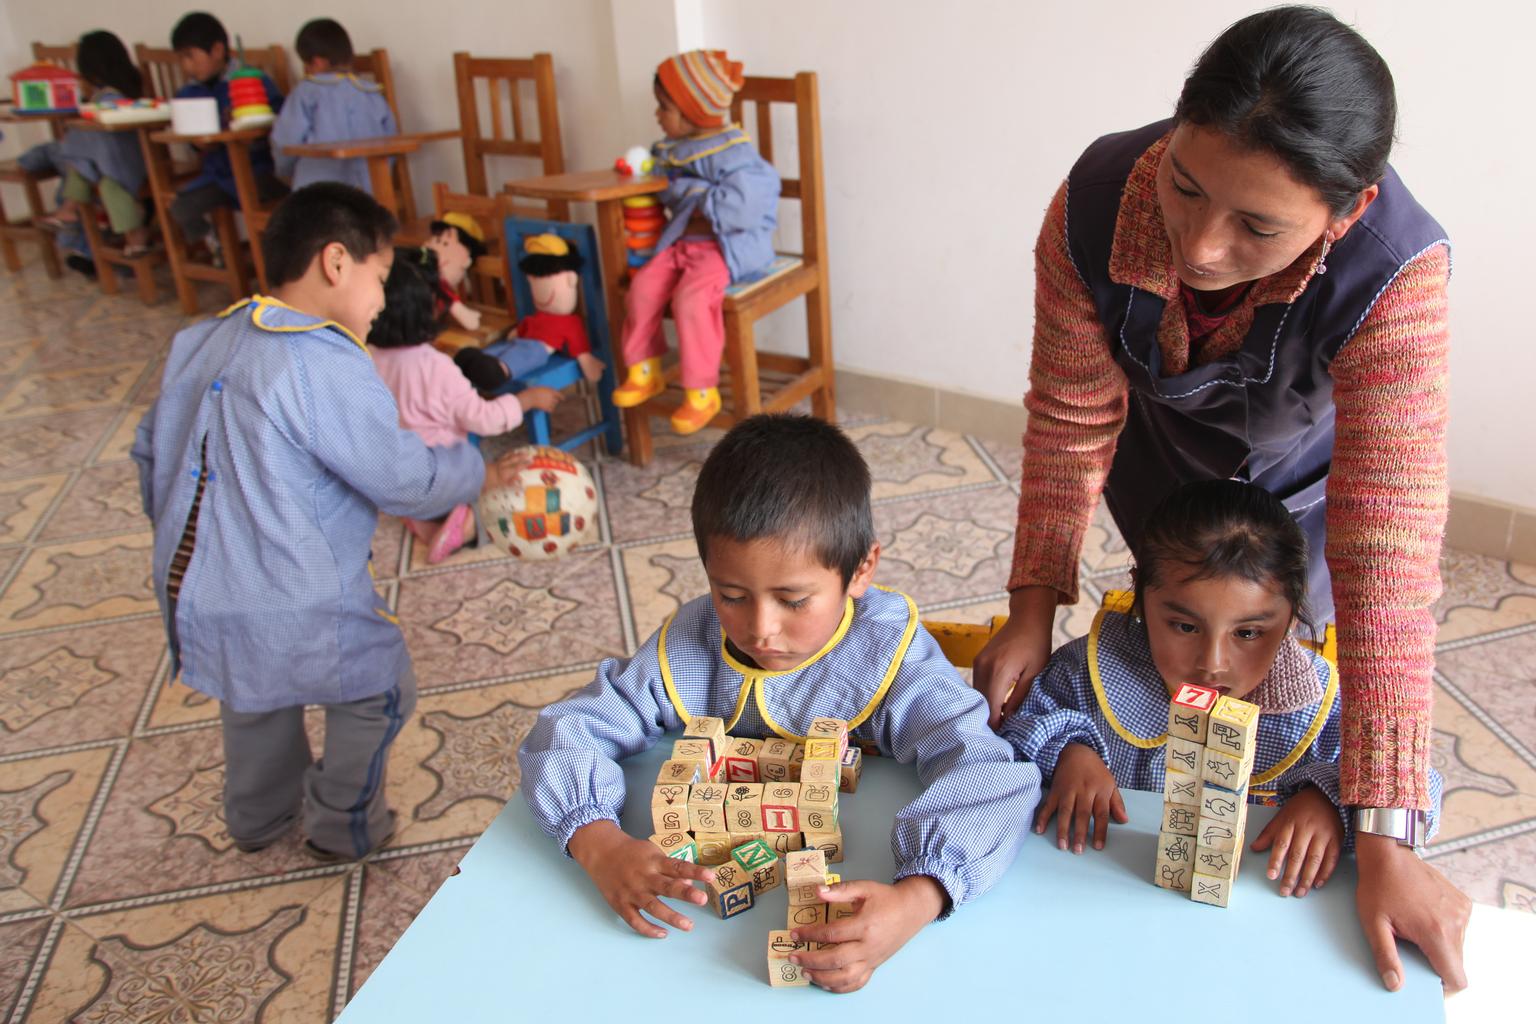 Zwei Kinder spielen mit Holzblöcken, die Betreuerin hilft ihnen.